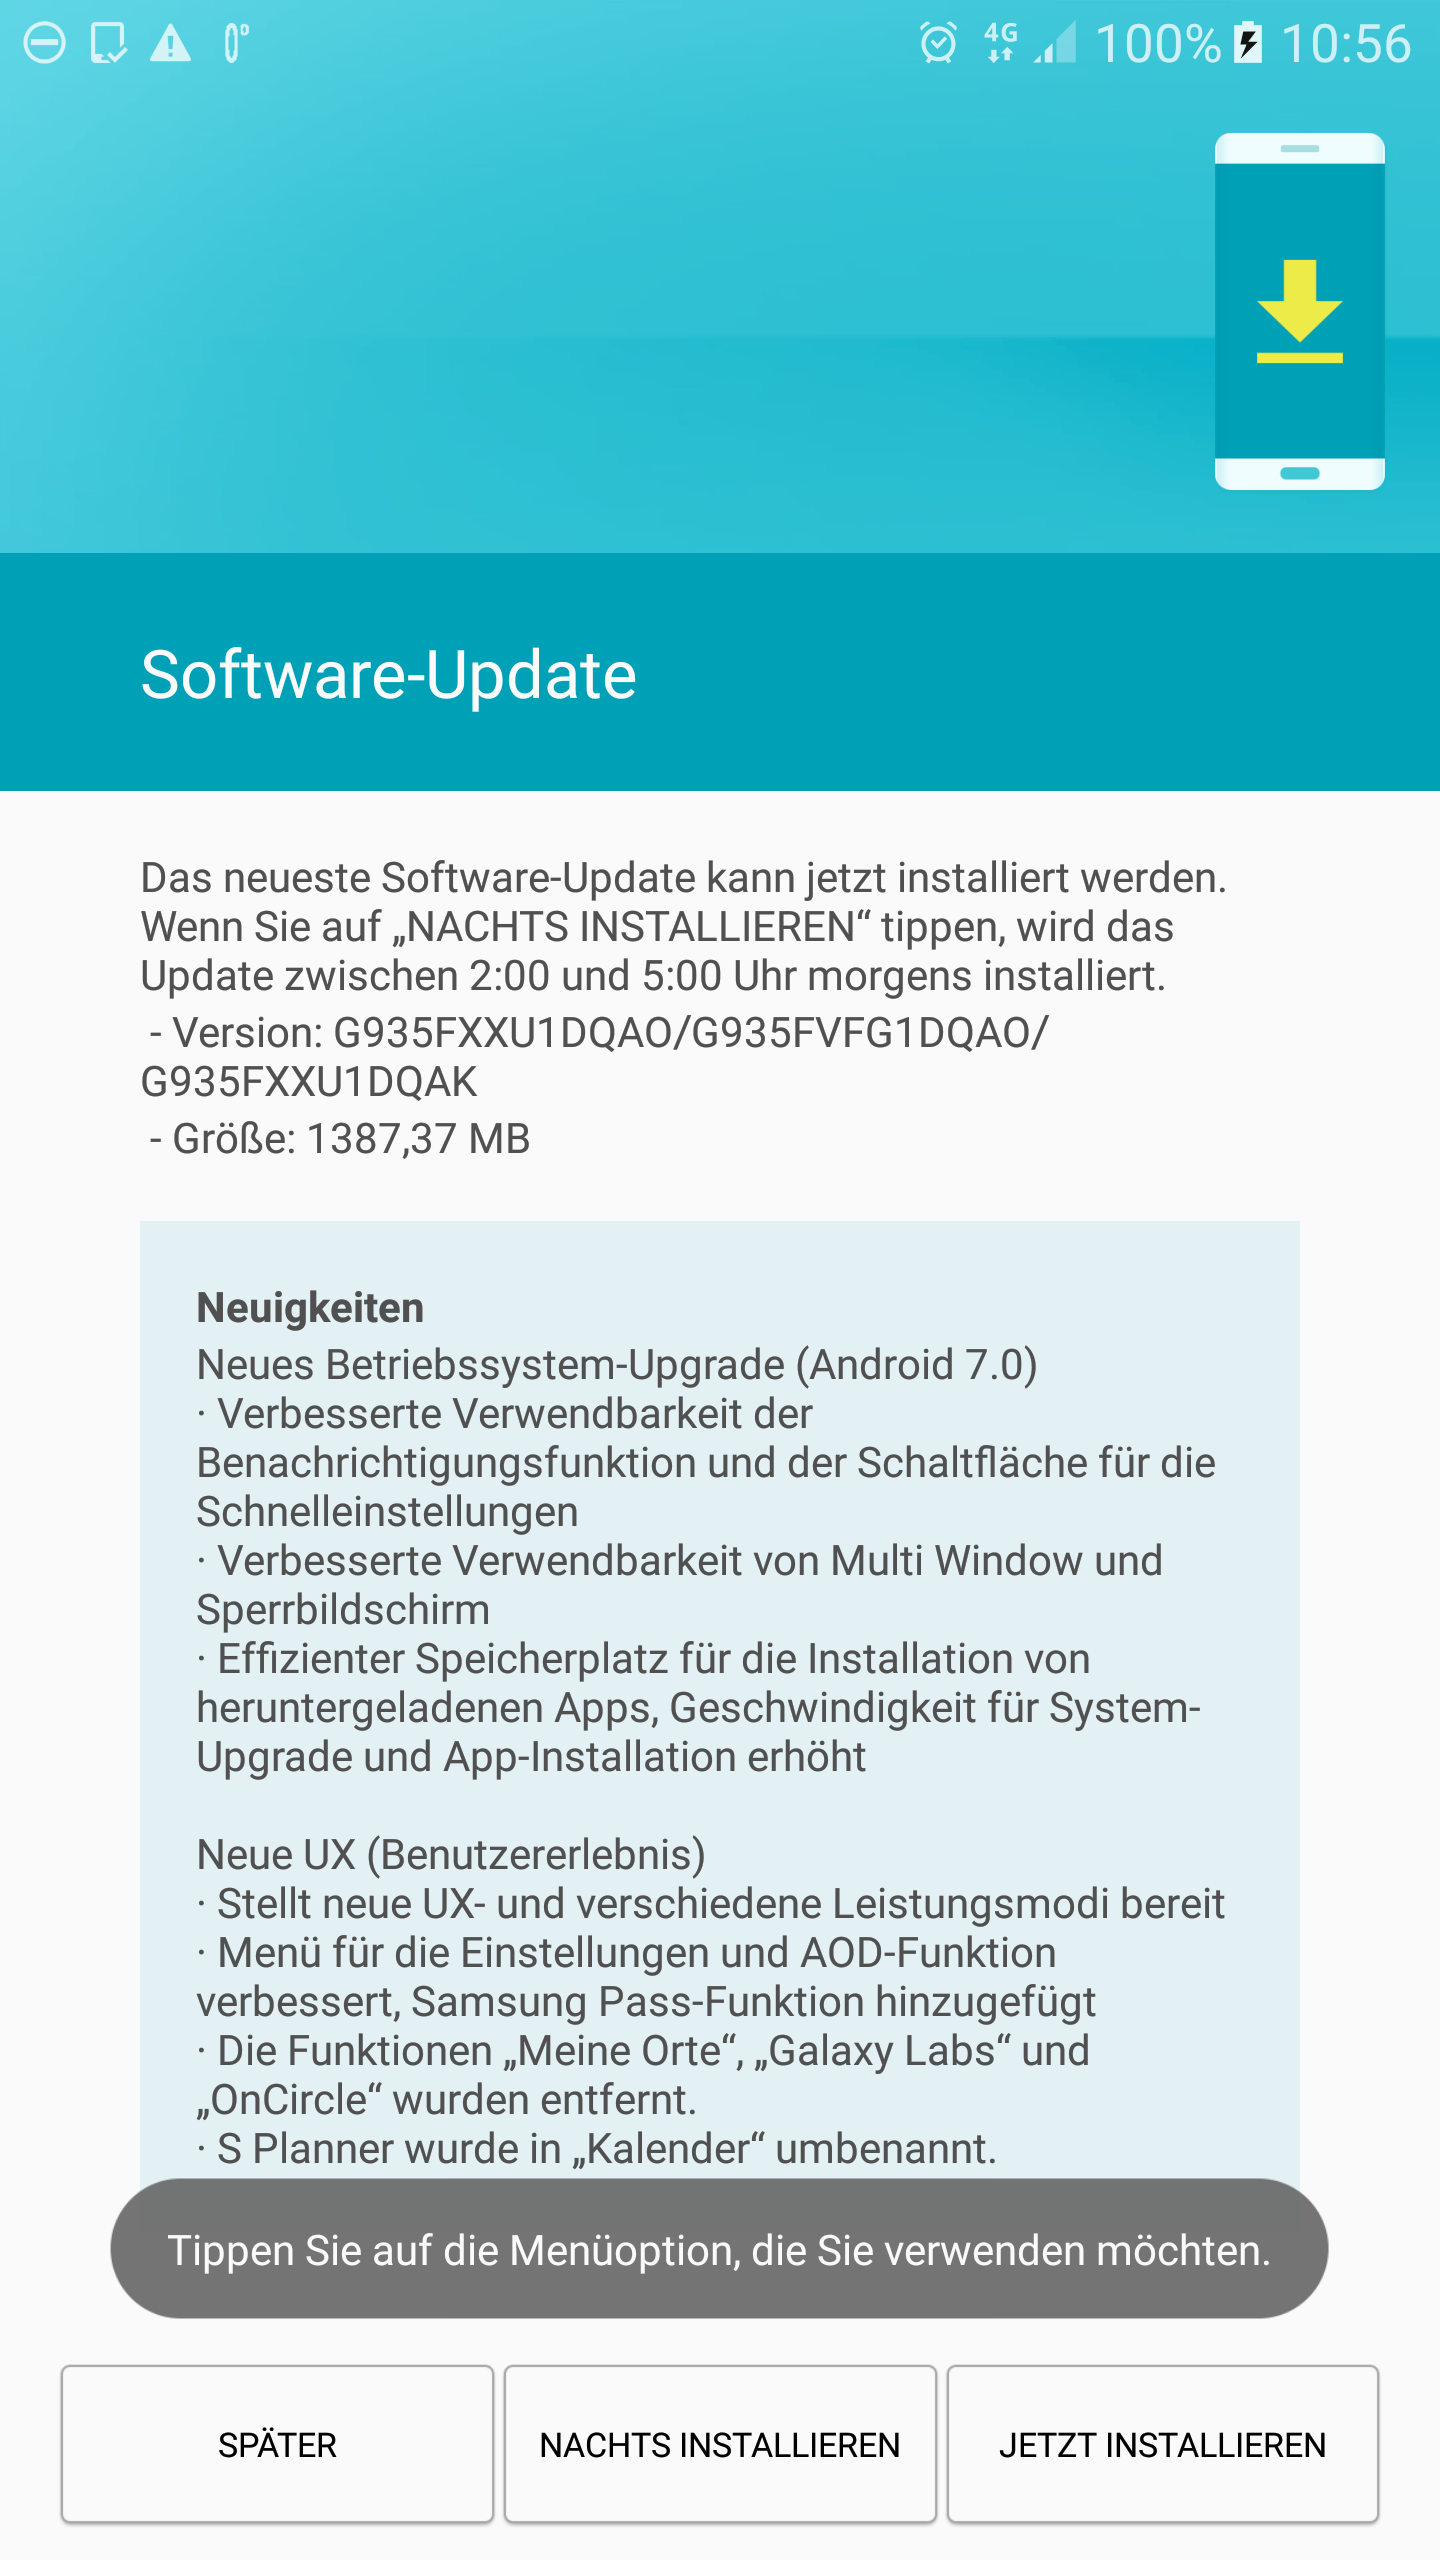 Actualización Galaxy S7 y S7 Edge Nougat disponible en Alemania, India y Rusia